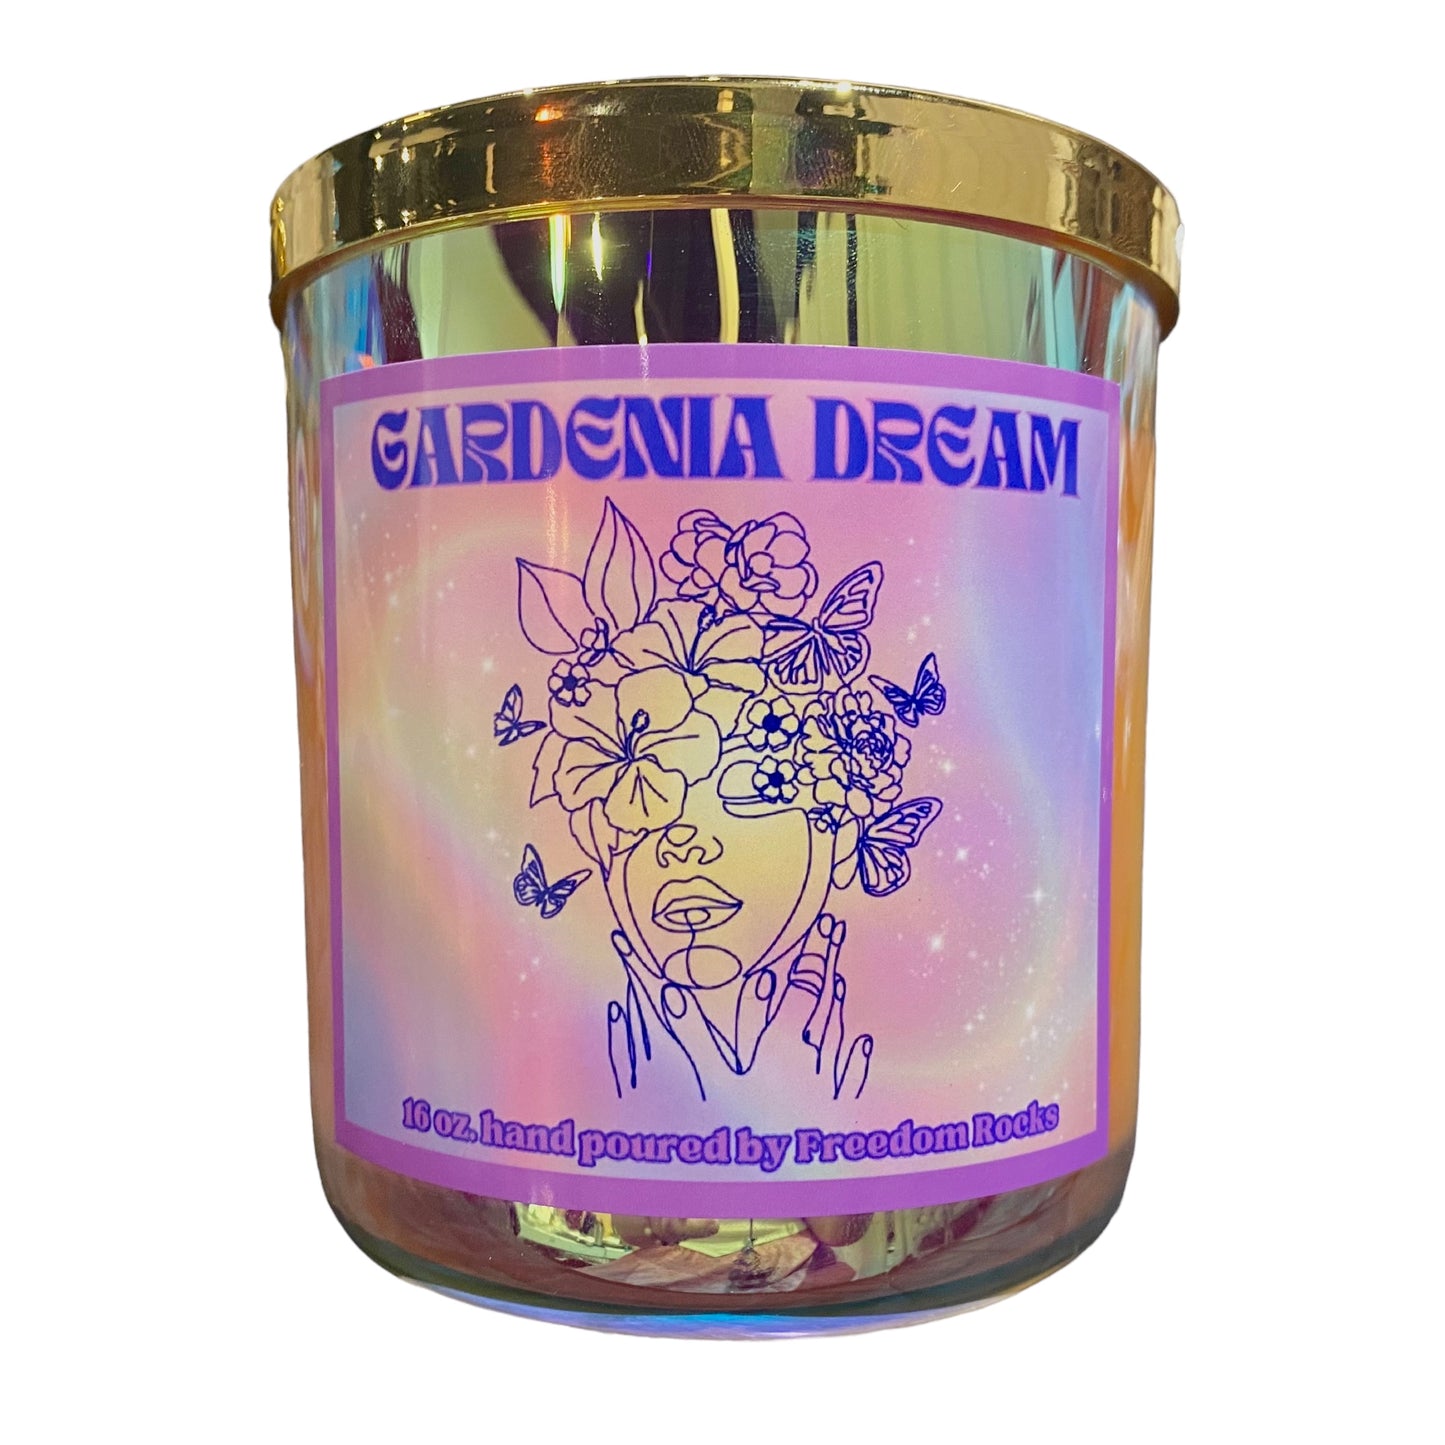 16 Oz Gardenia Dream Soy Candle in a Aura Glass Jar